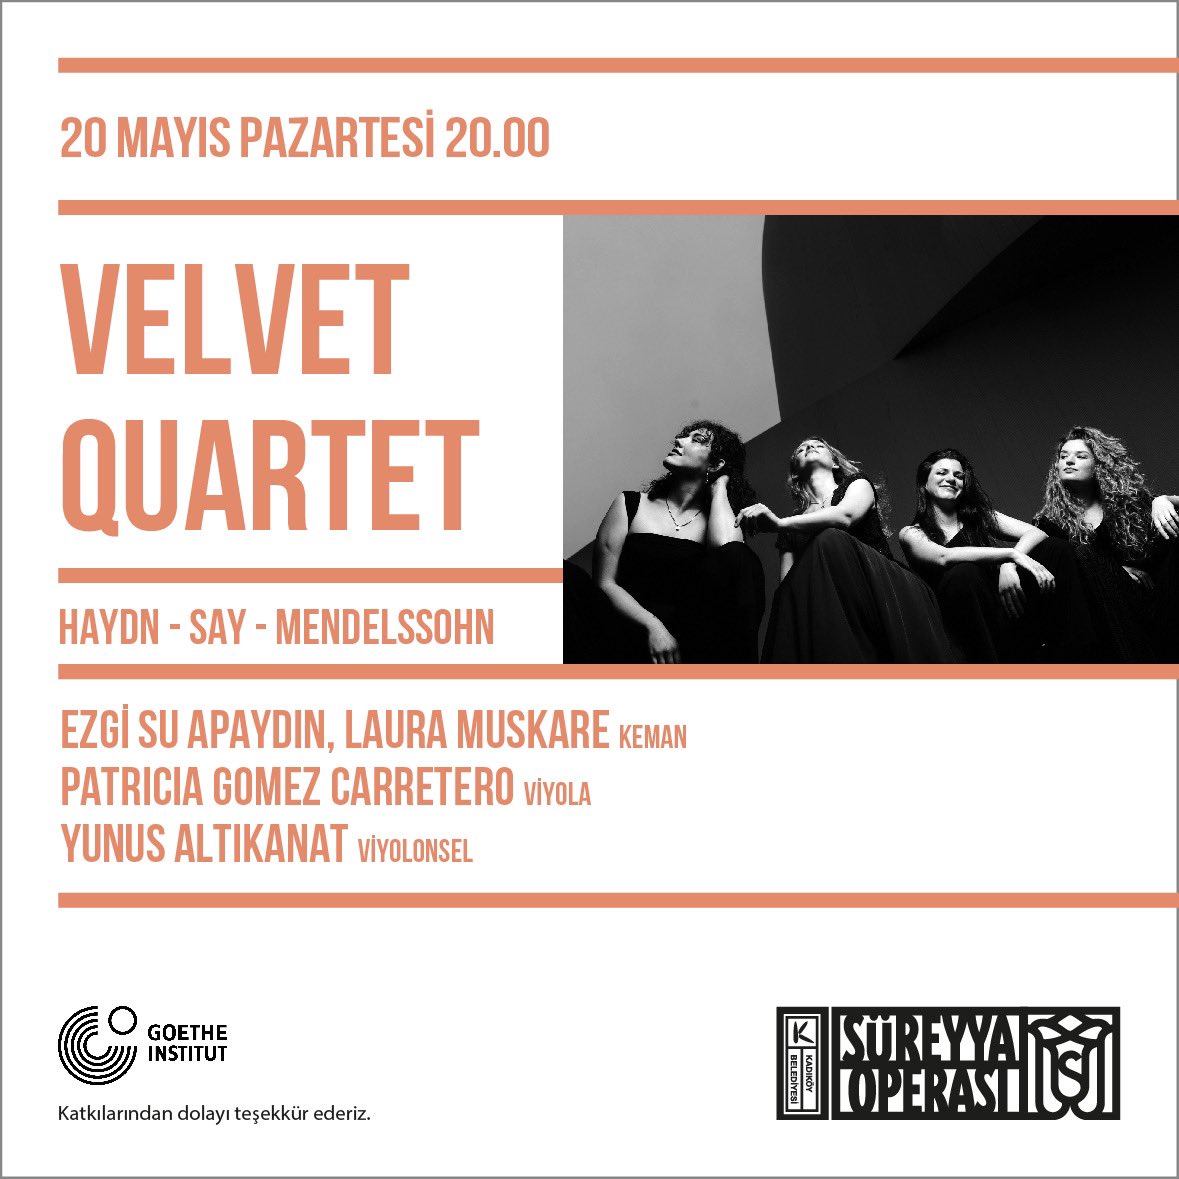 Kendini oda müziğine adamış genç müzisyenlerden oluşan Velvet Quartet 20 Mayıs'ta Süreyya Operası’nda müzikseverlerle buluşacak, bekliyoruz. 🎟️ mobilet.com/tr/event/velve…